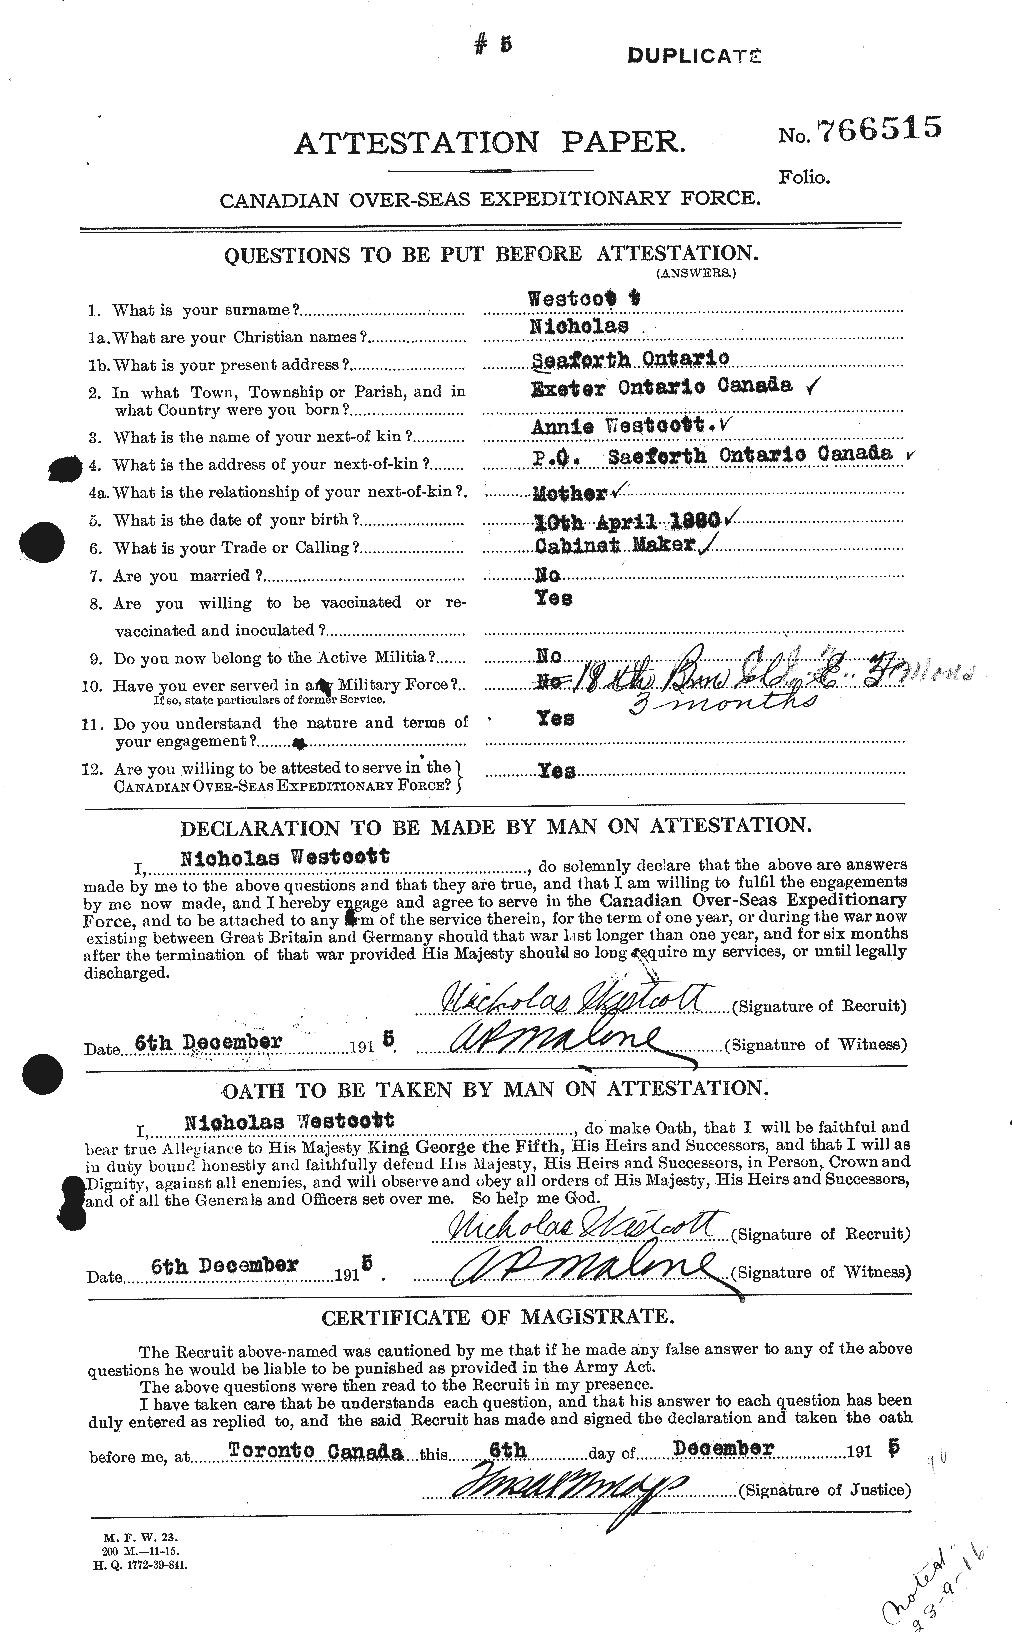 Dossiers du Personnel de la Première Guerre mondiale - CEC 668119a